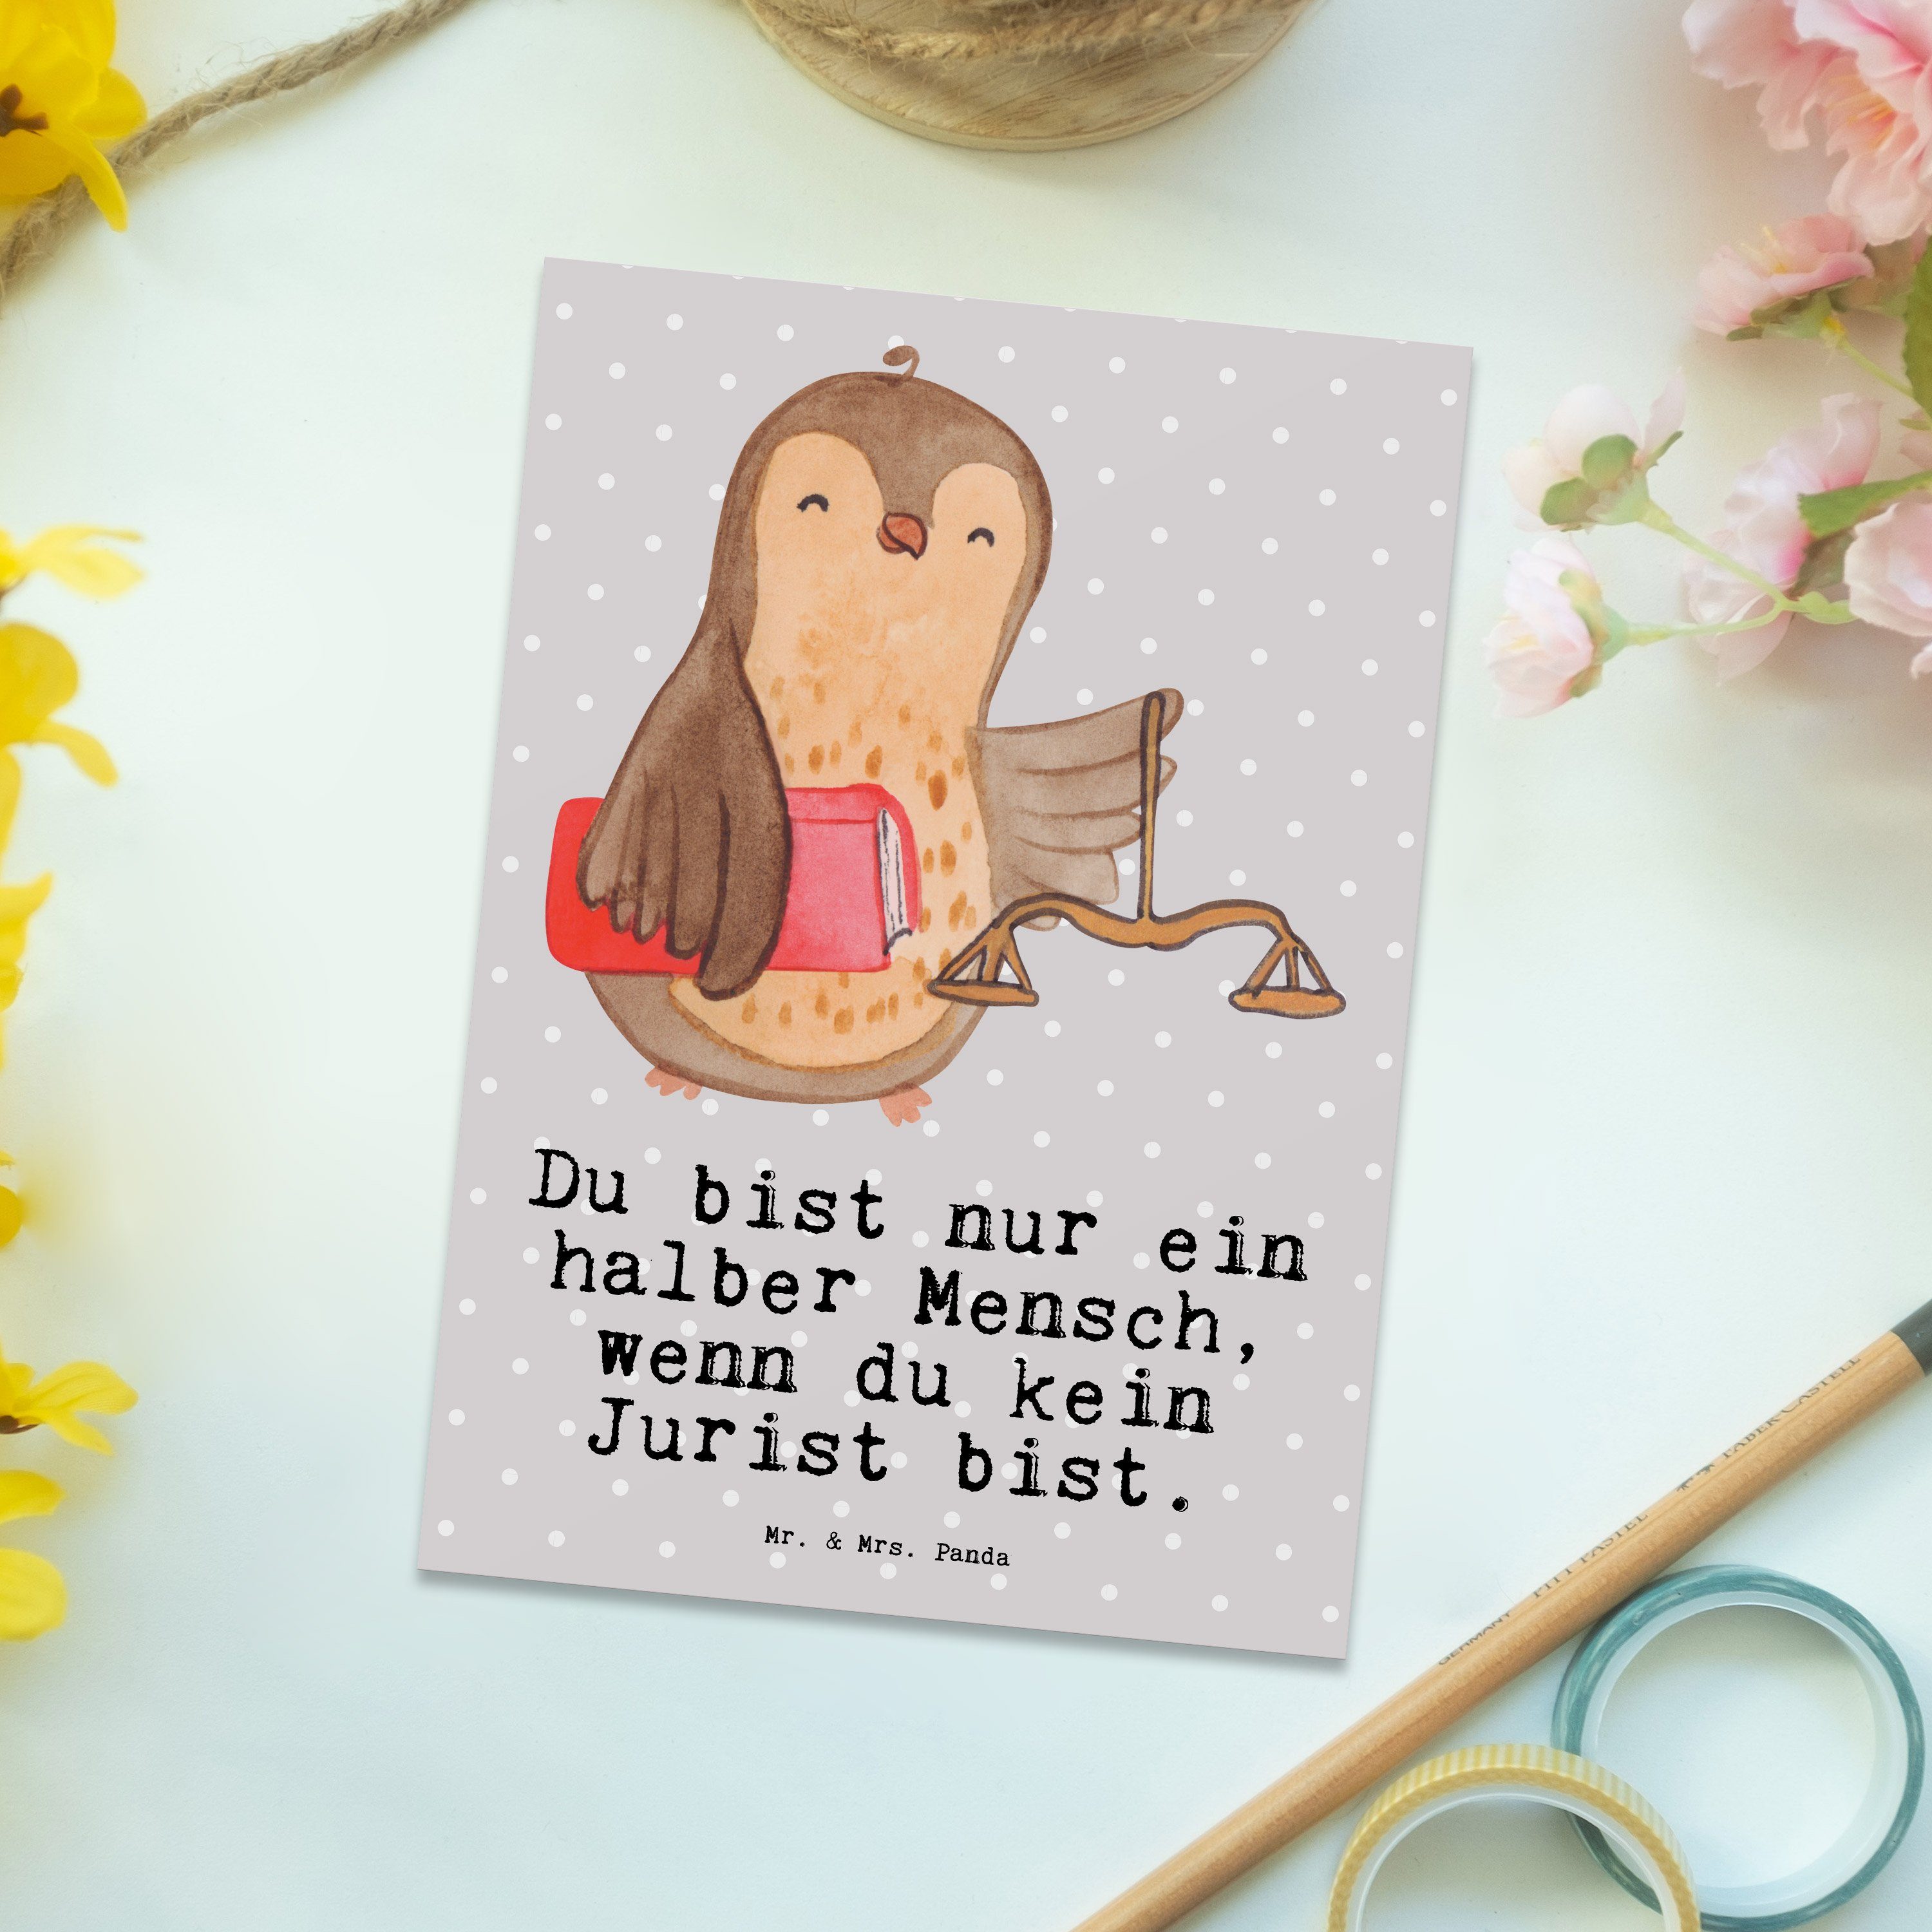 Grau Postkarte laws, Panda Jurist Herz Pastell - Mr. Master of - Mrs. Geschenkka Geschenk, & mit